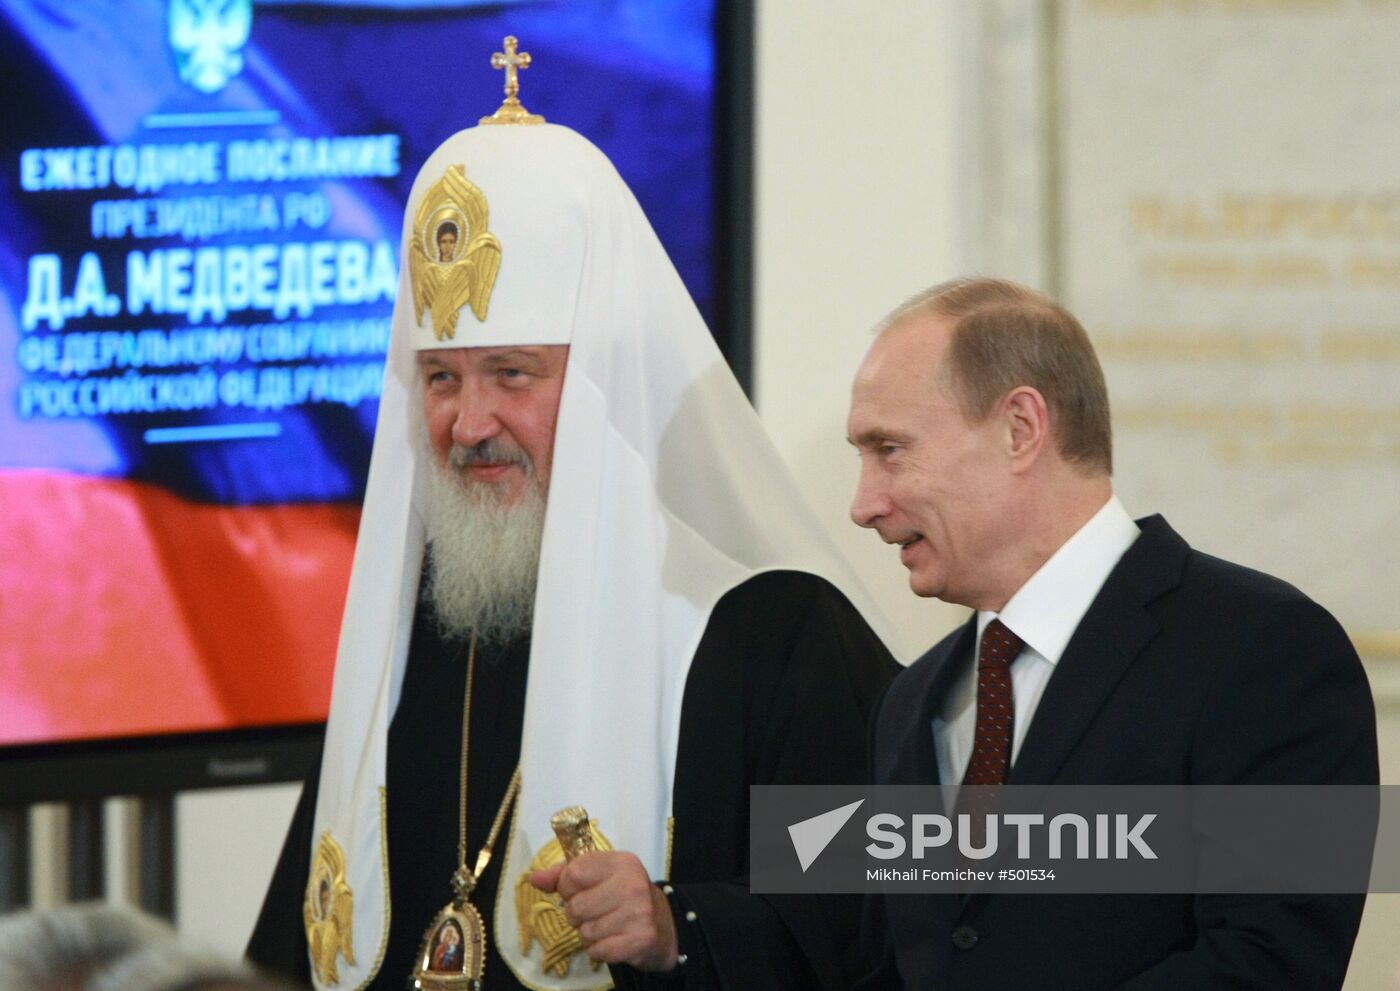 Patriarch Kirill and Prime Minister Vladimir Putin